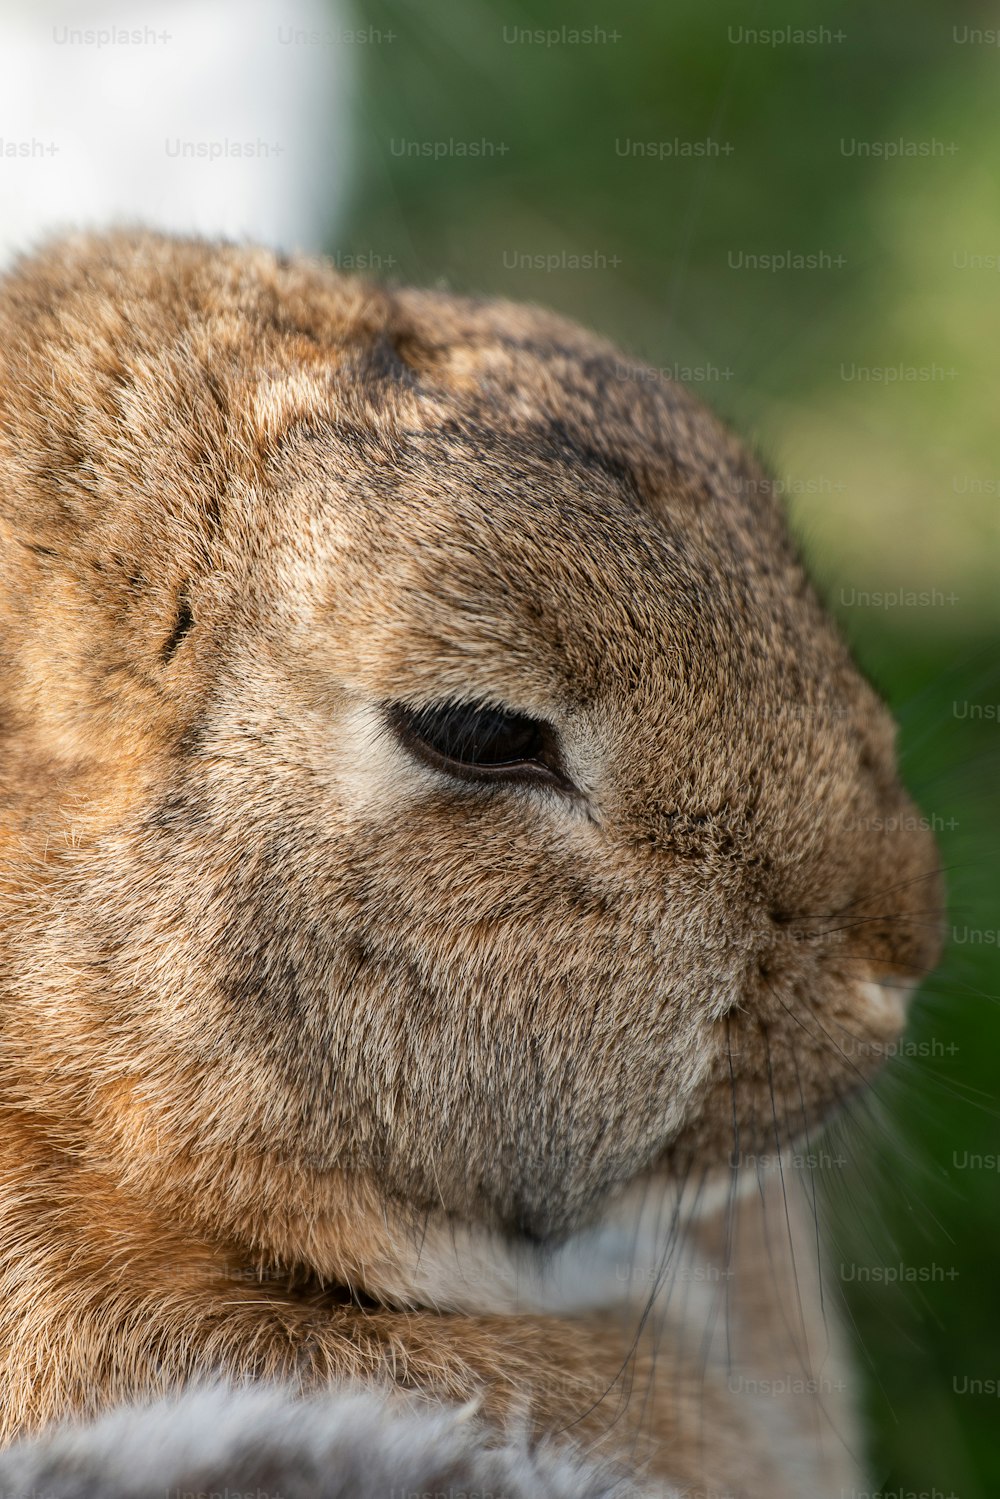 Un primer plano de la cara de un conejo con un fondo borroso